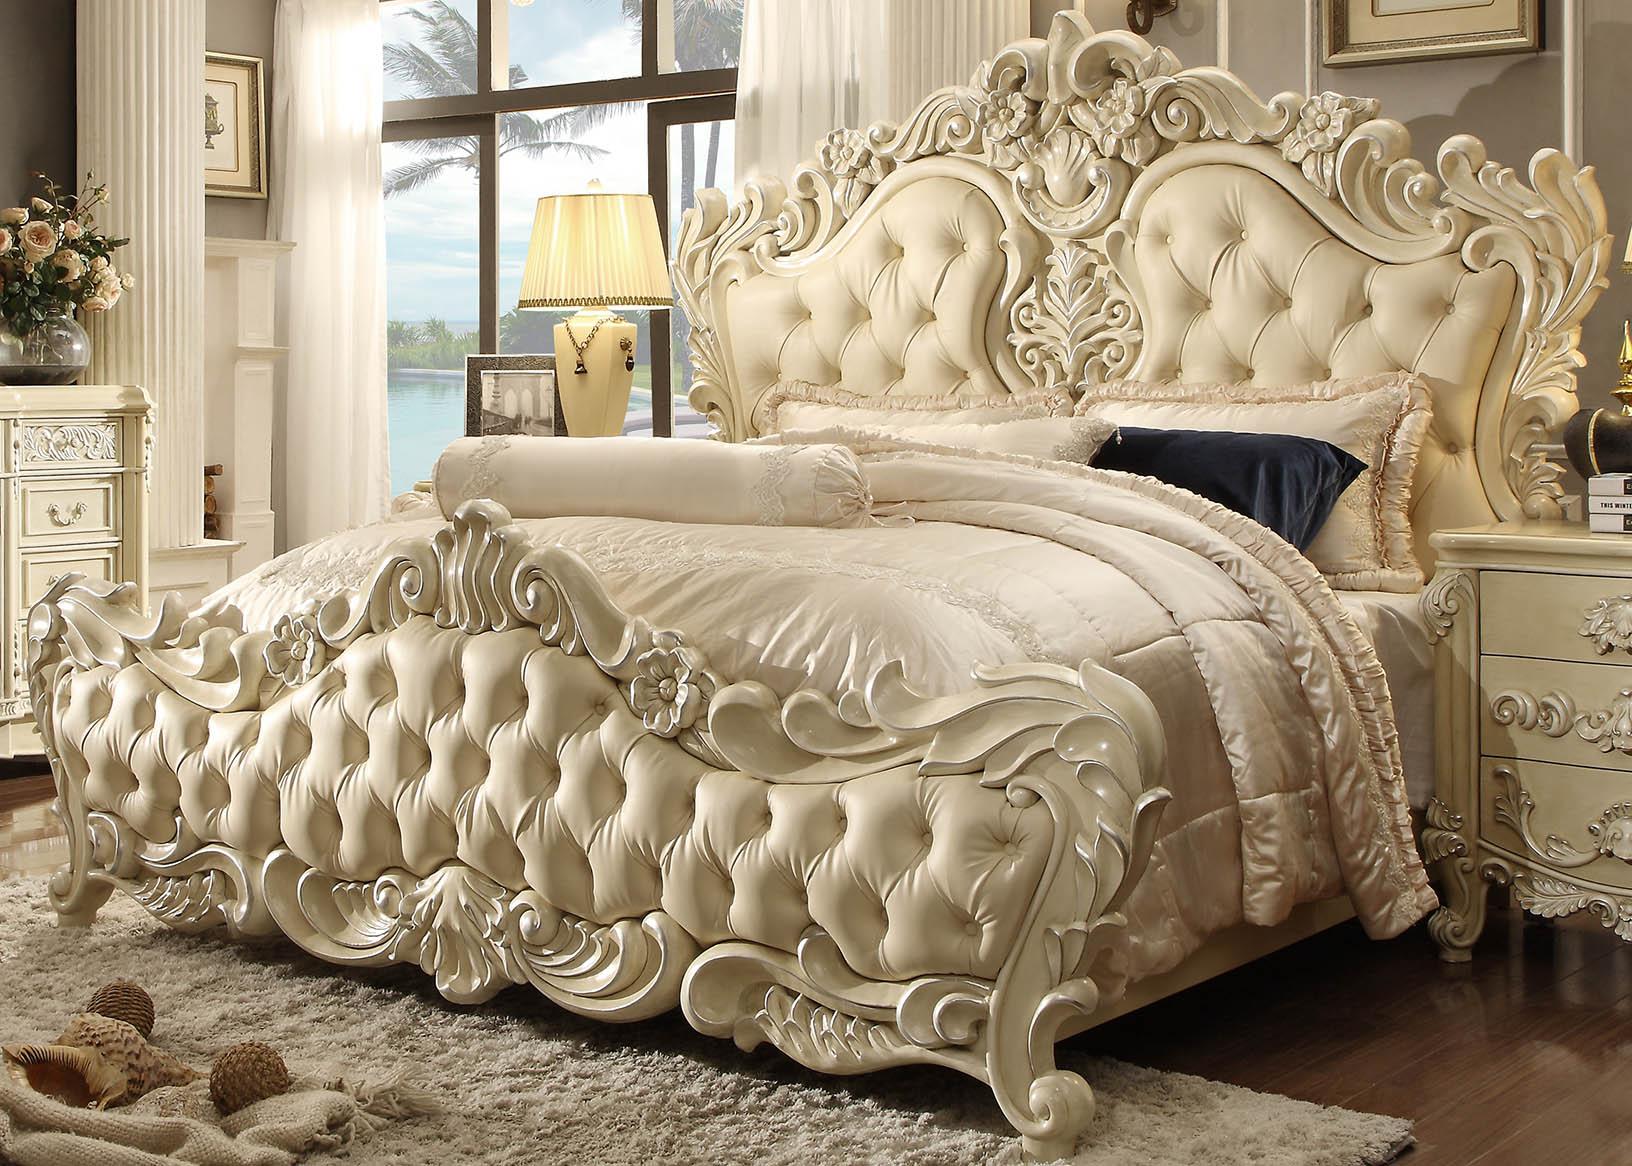 Traditional Panel Bed HD-5800-EK HD-5800-EK in Pearl, Cream Leather